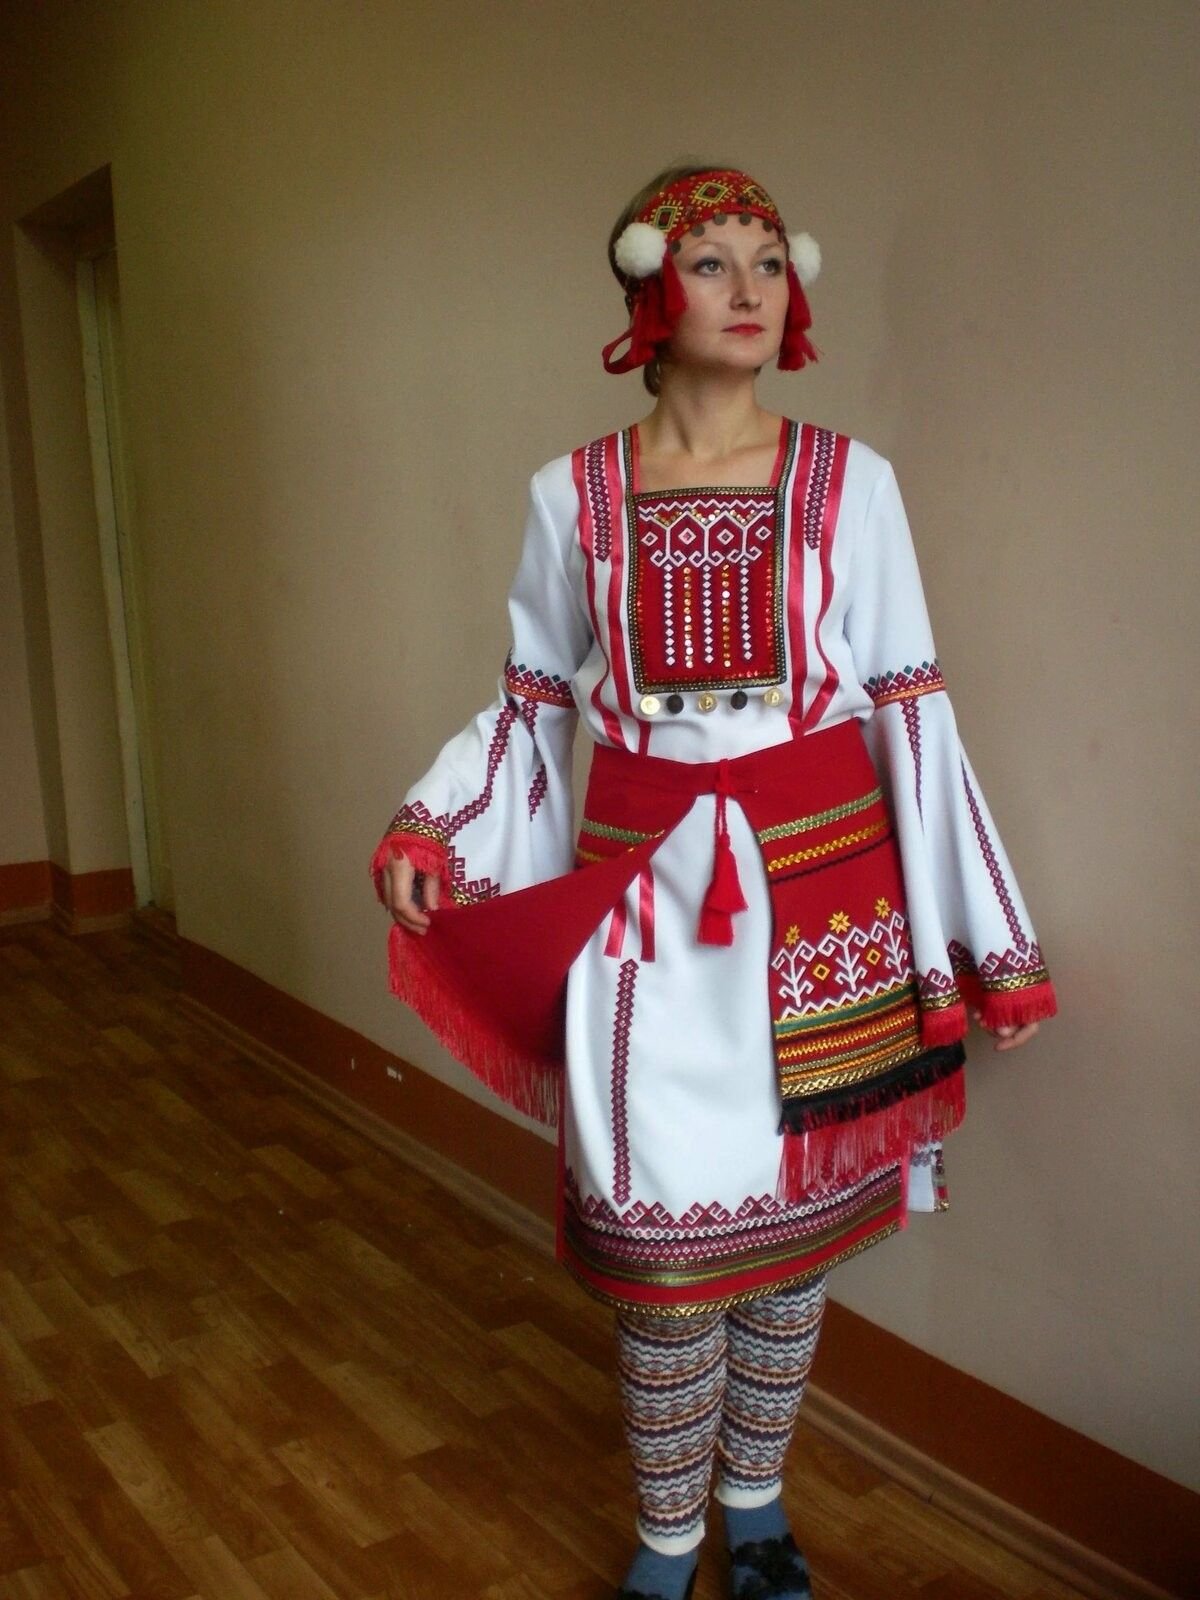 Традиционный костюм мордовского народа